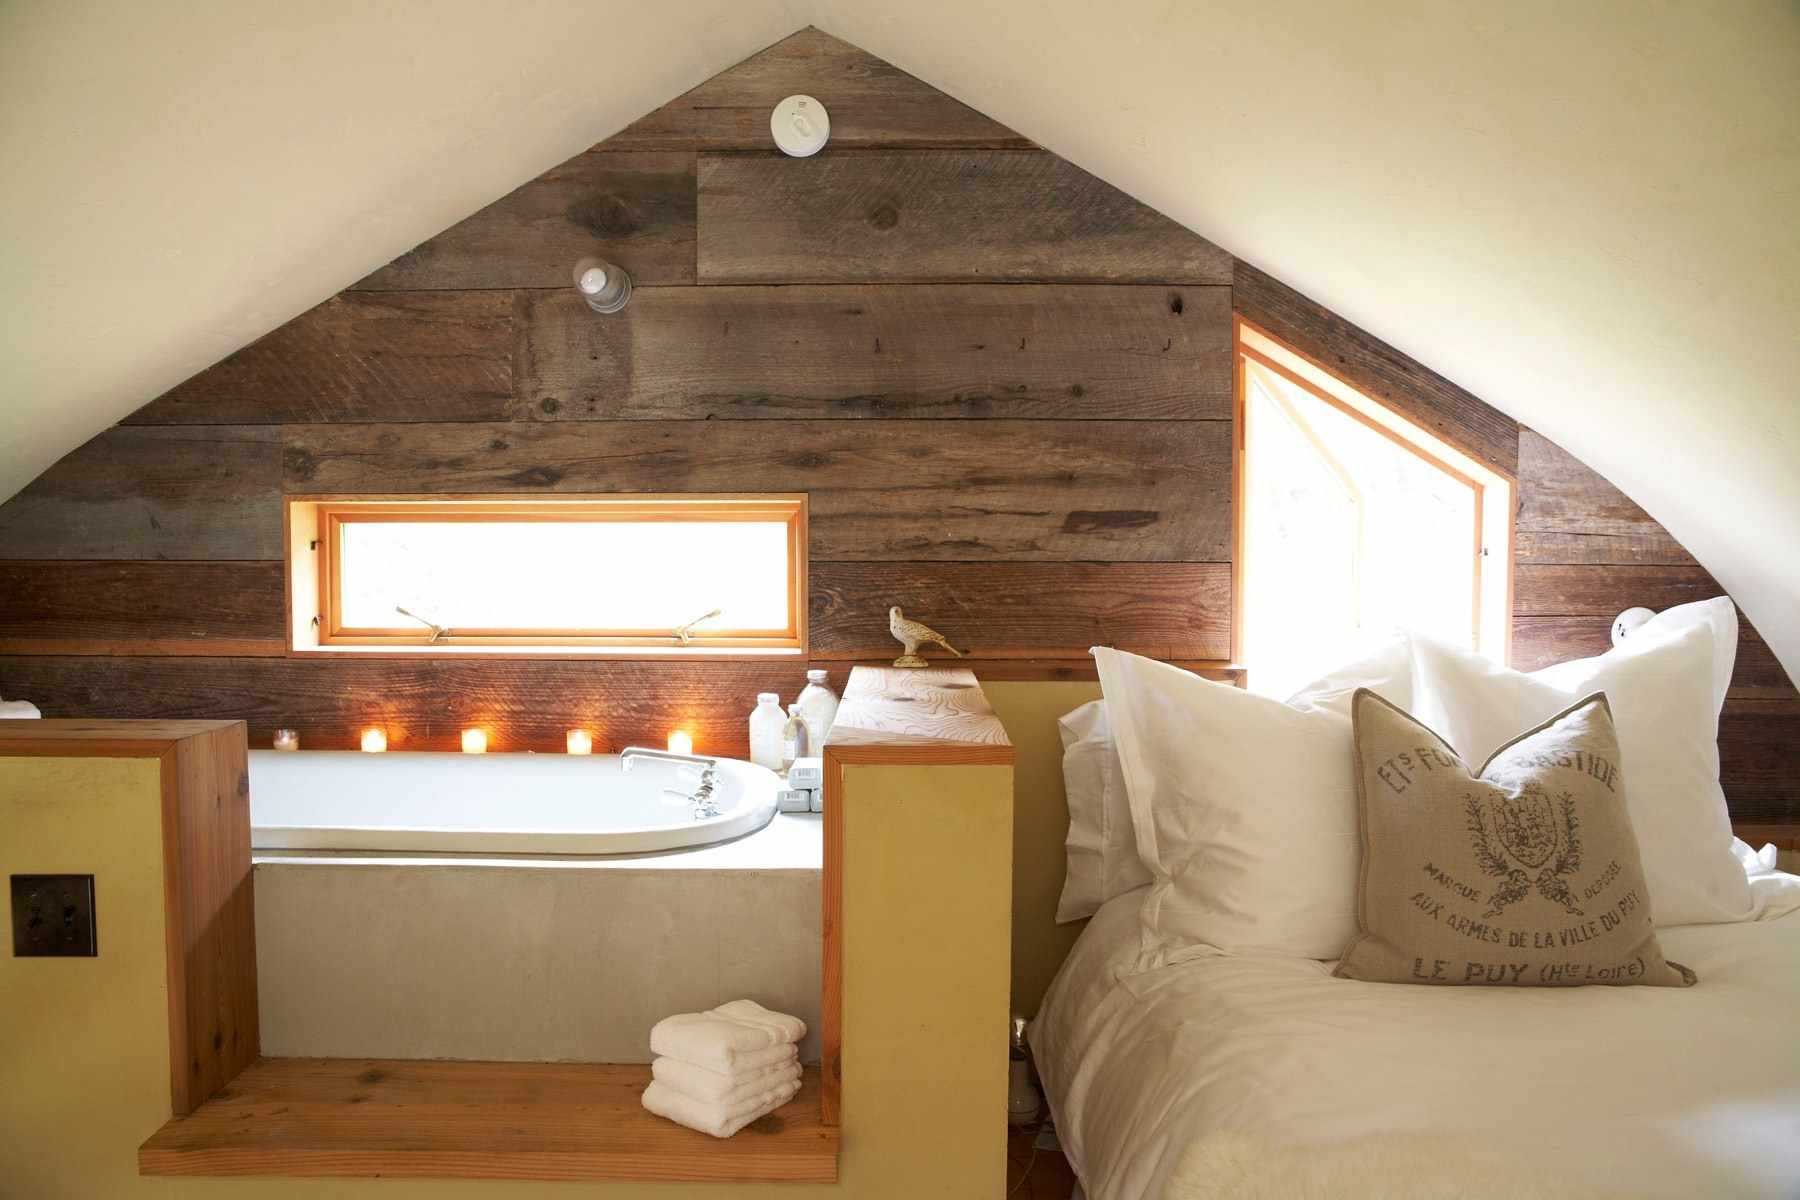 גרסה של הסגנון הלא שגרתי של חדר השינה בעליית הגג